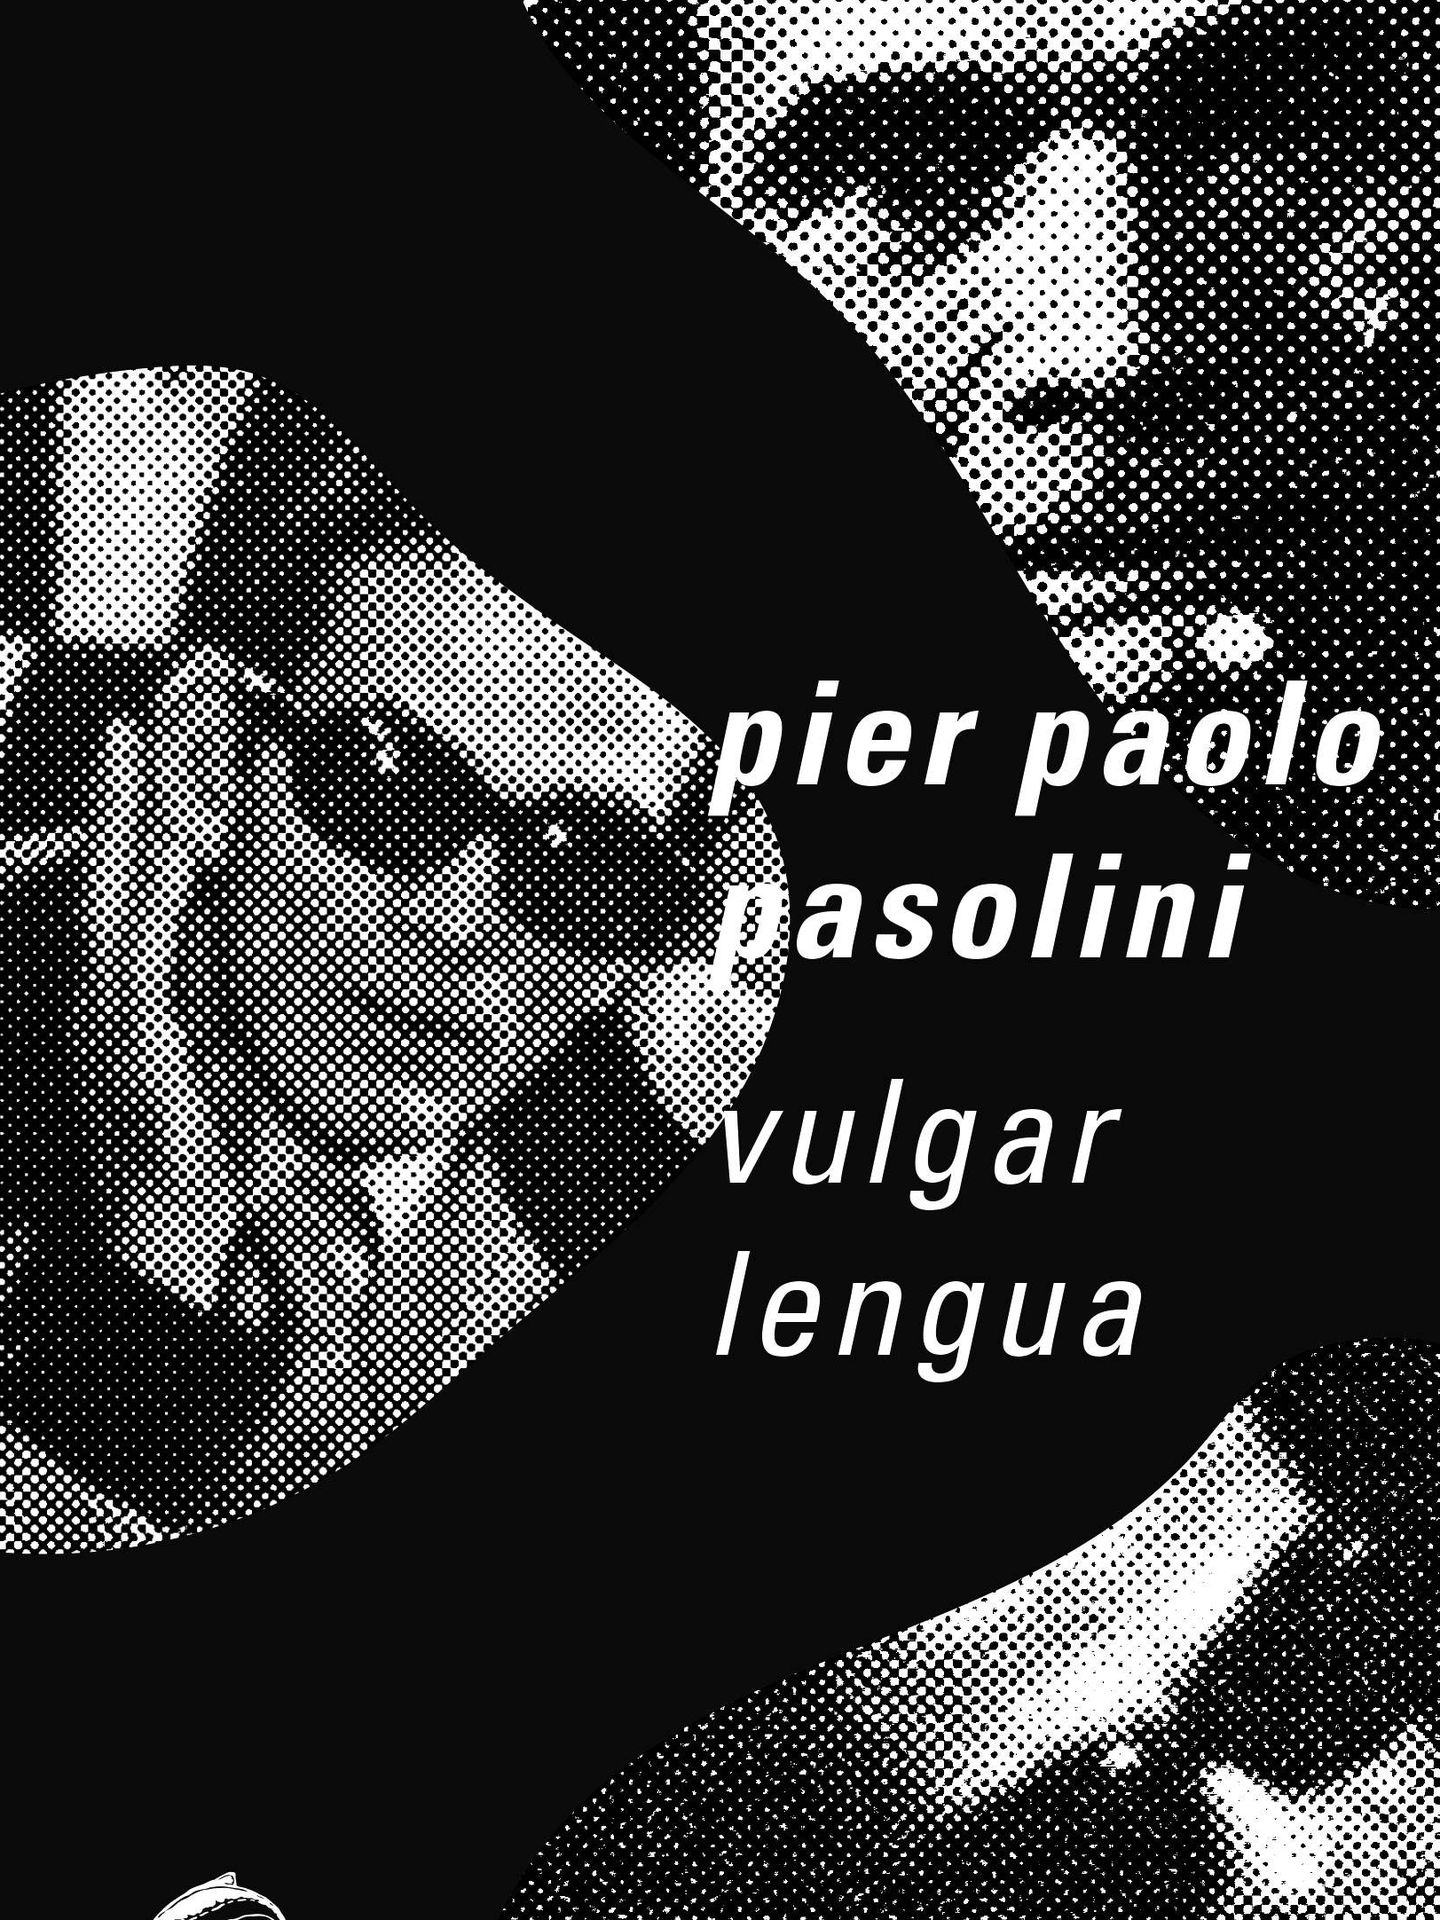 Pasolini - 'Vulgar lengua'